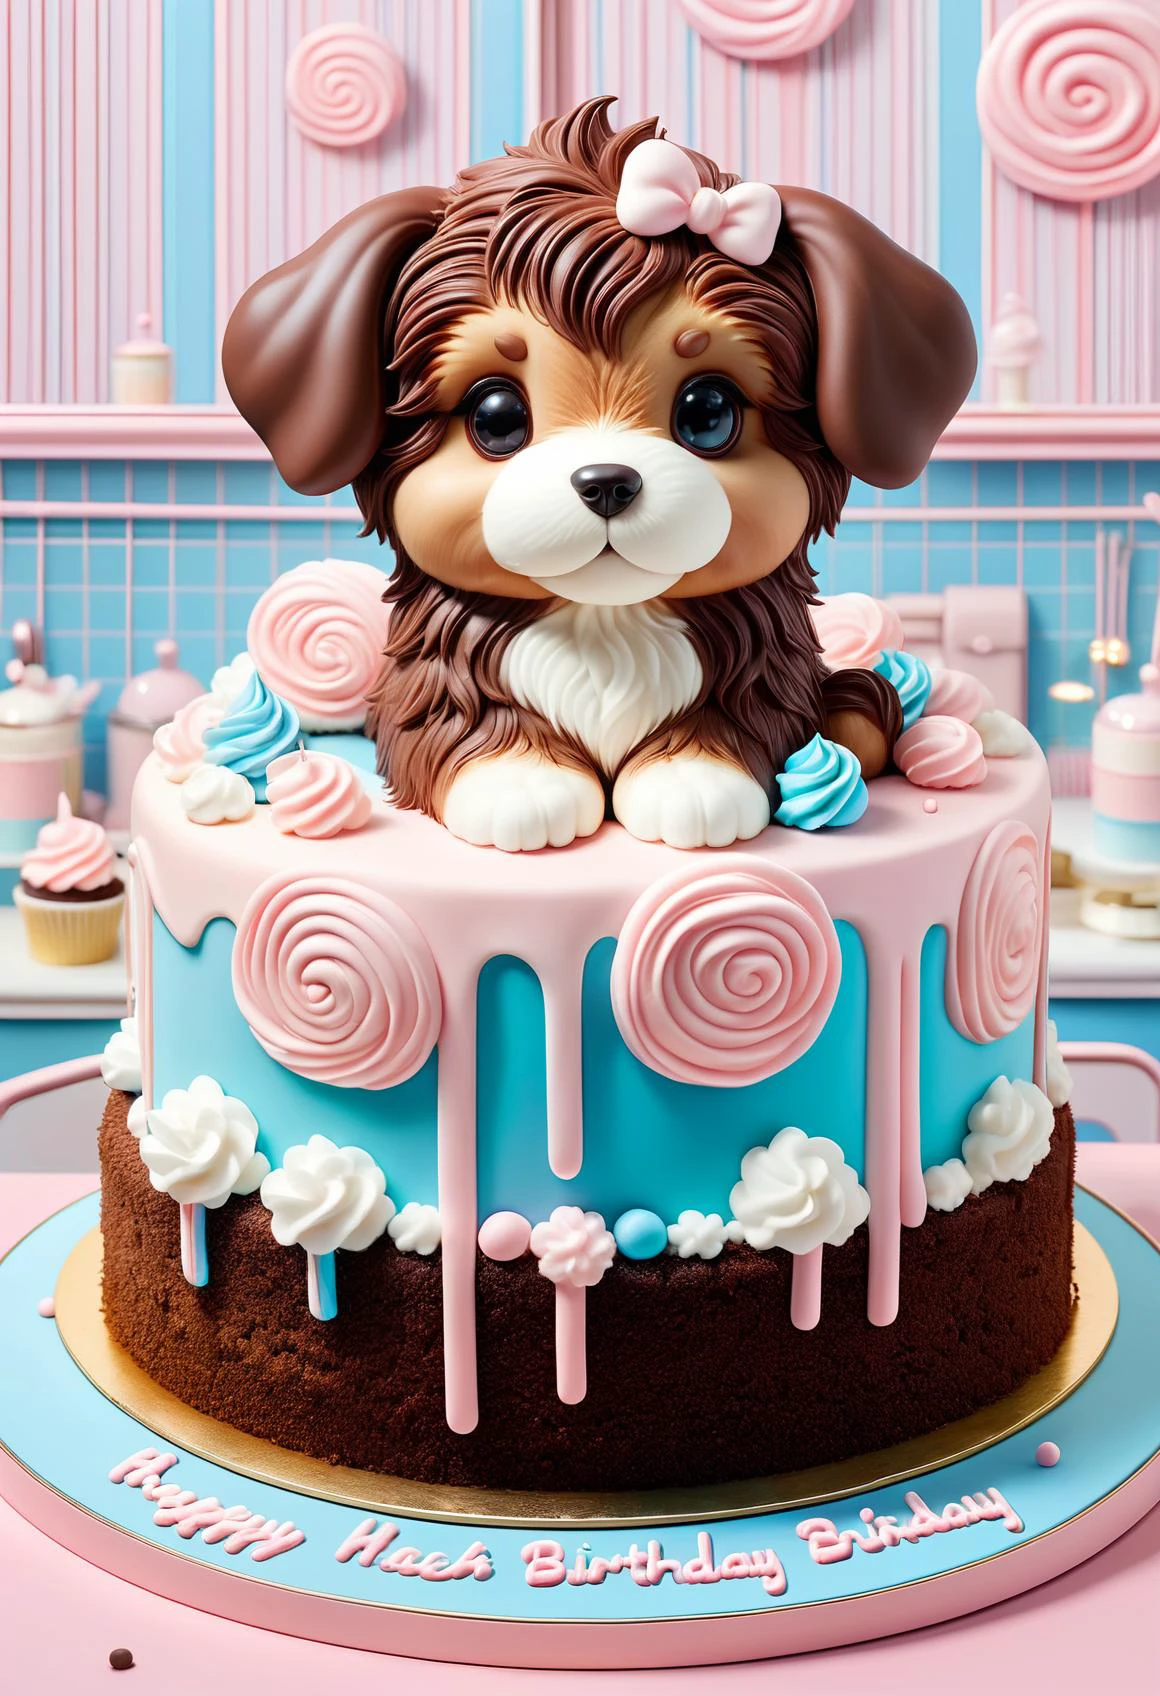 algodão doce um lindo bolo de aniversário de chocolate em forma de cachorrinho, profissional, alta qualidade, Super fofo, kawaii, 8K, adorável,